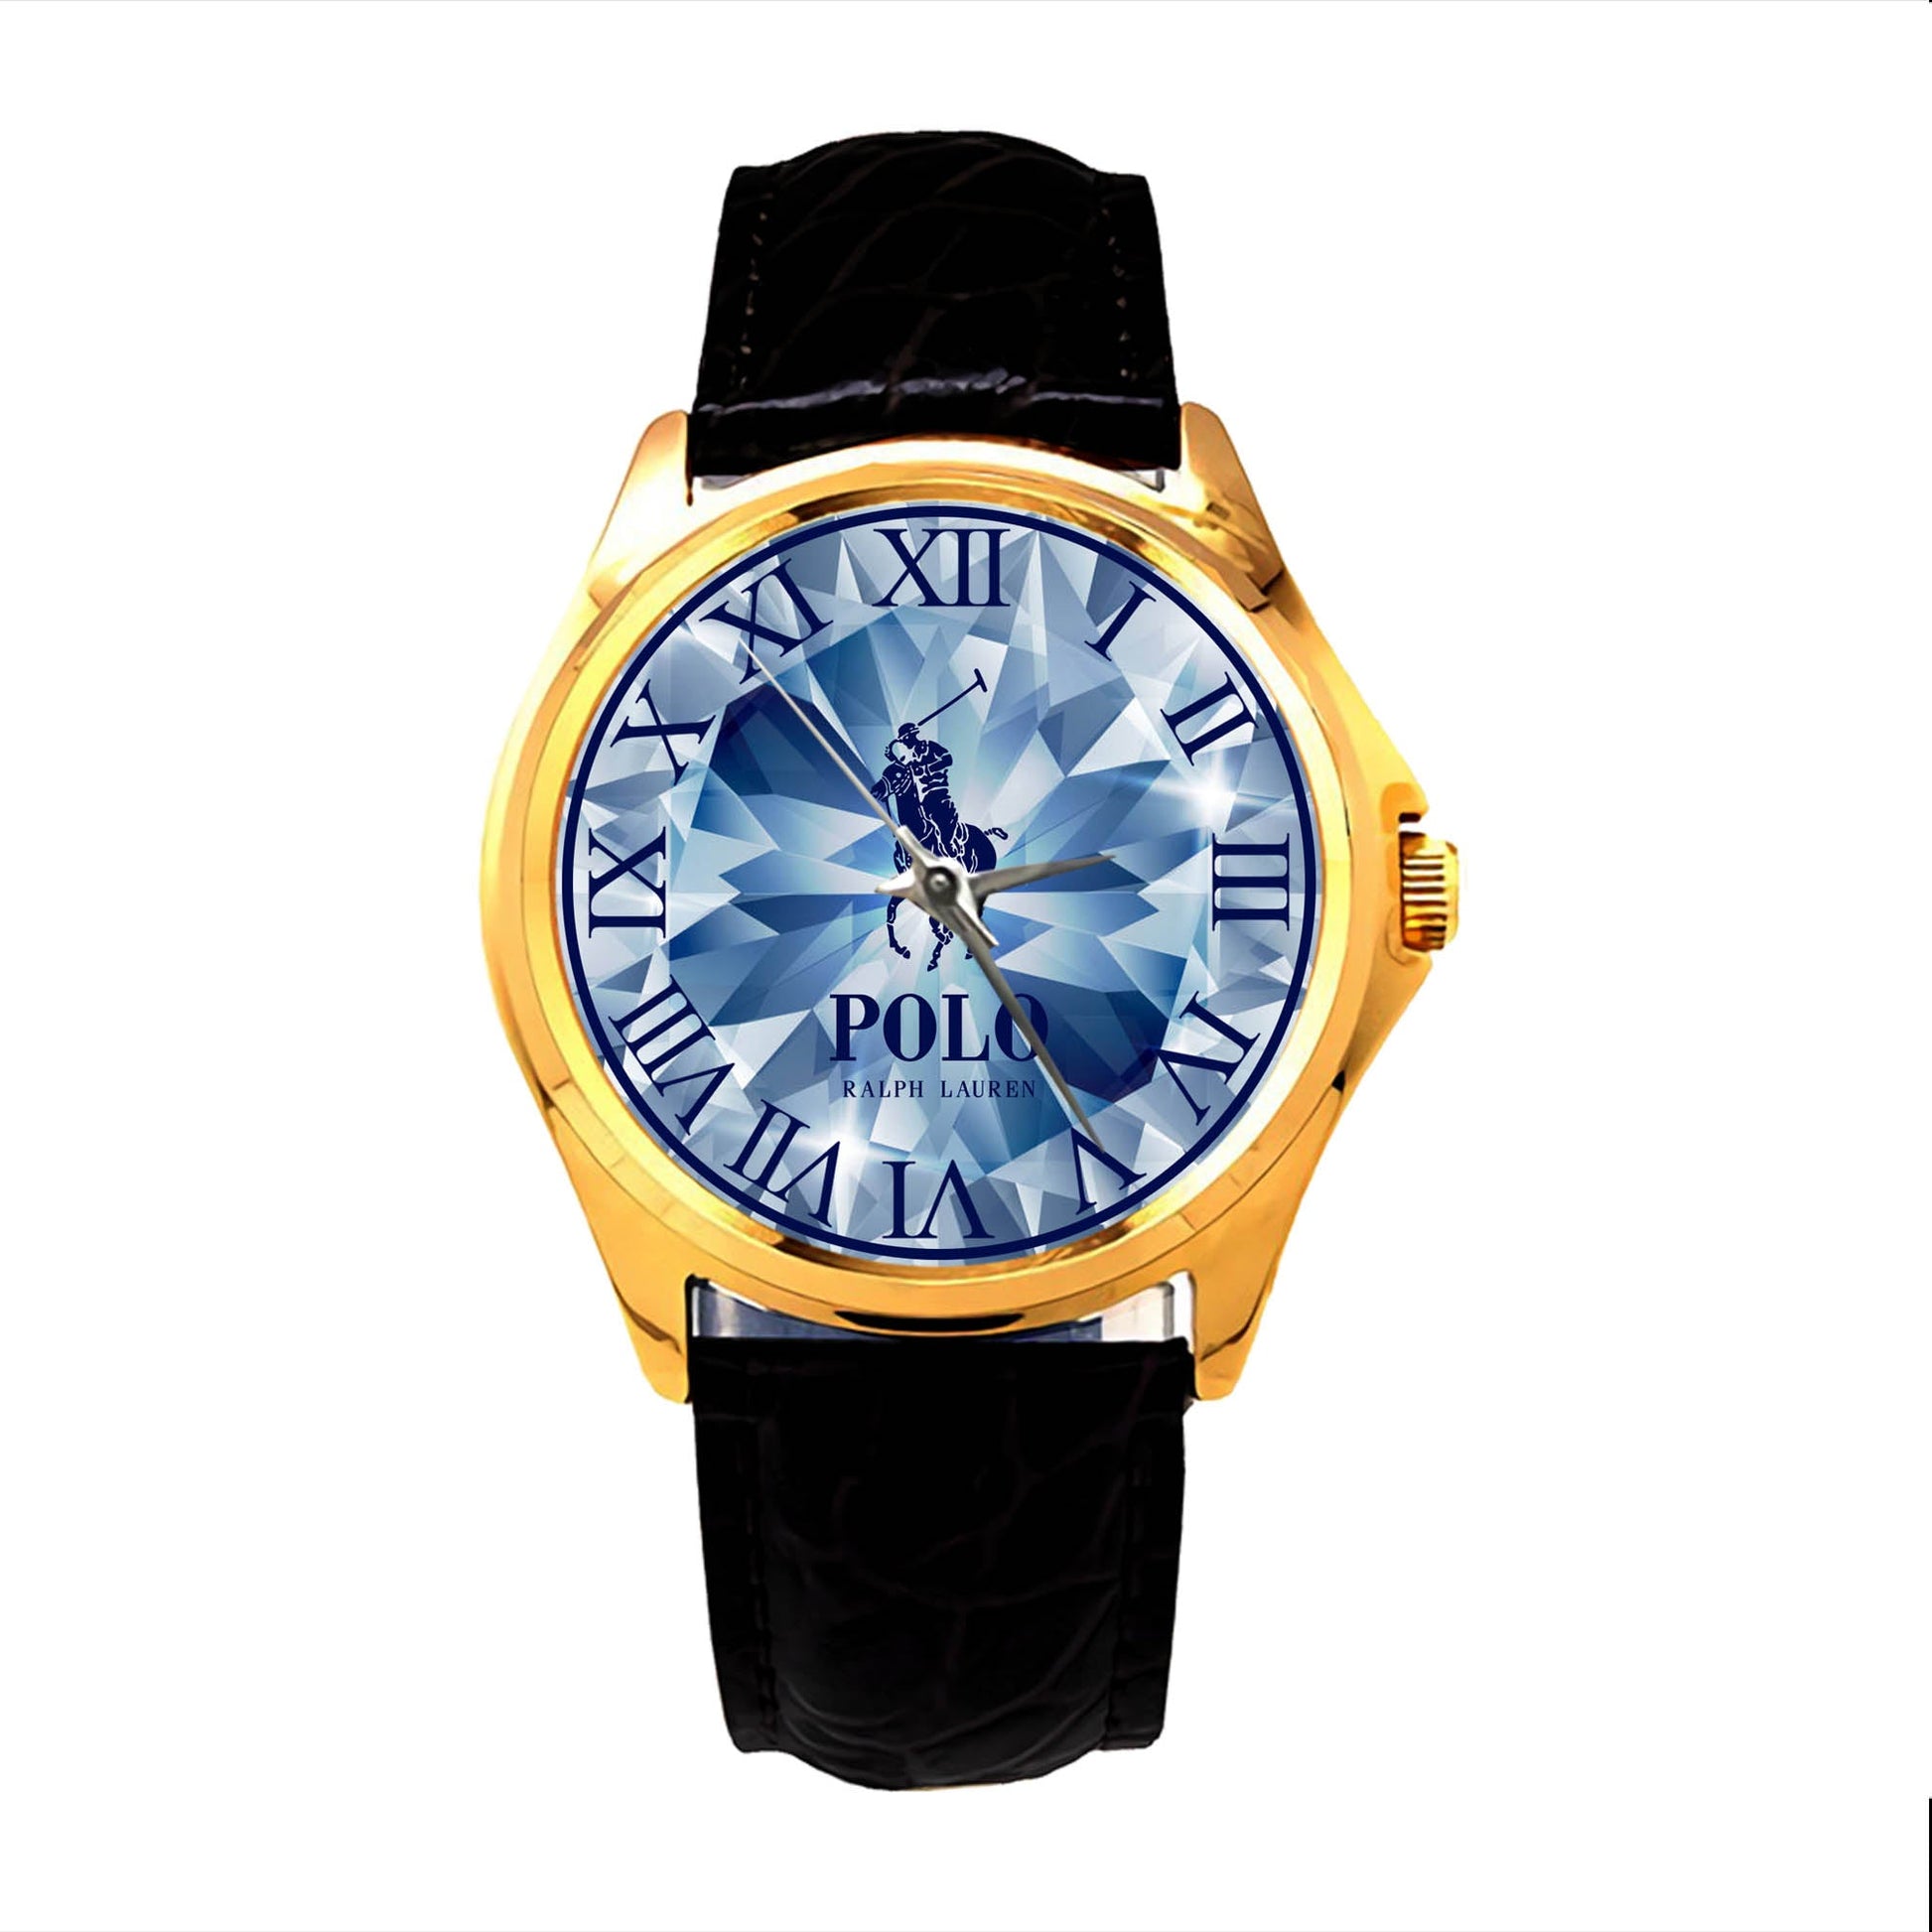 Polo Ralph Lauren Cristal motif Watch KP784